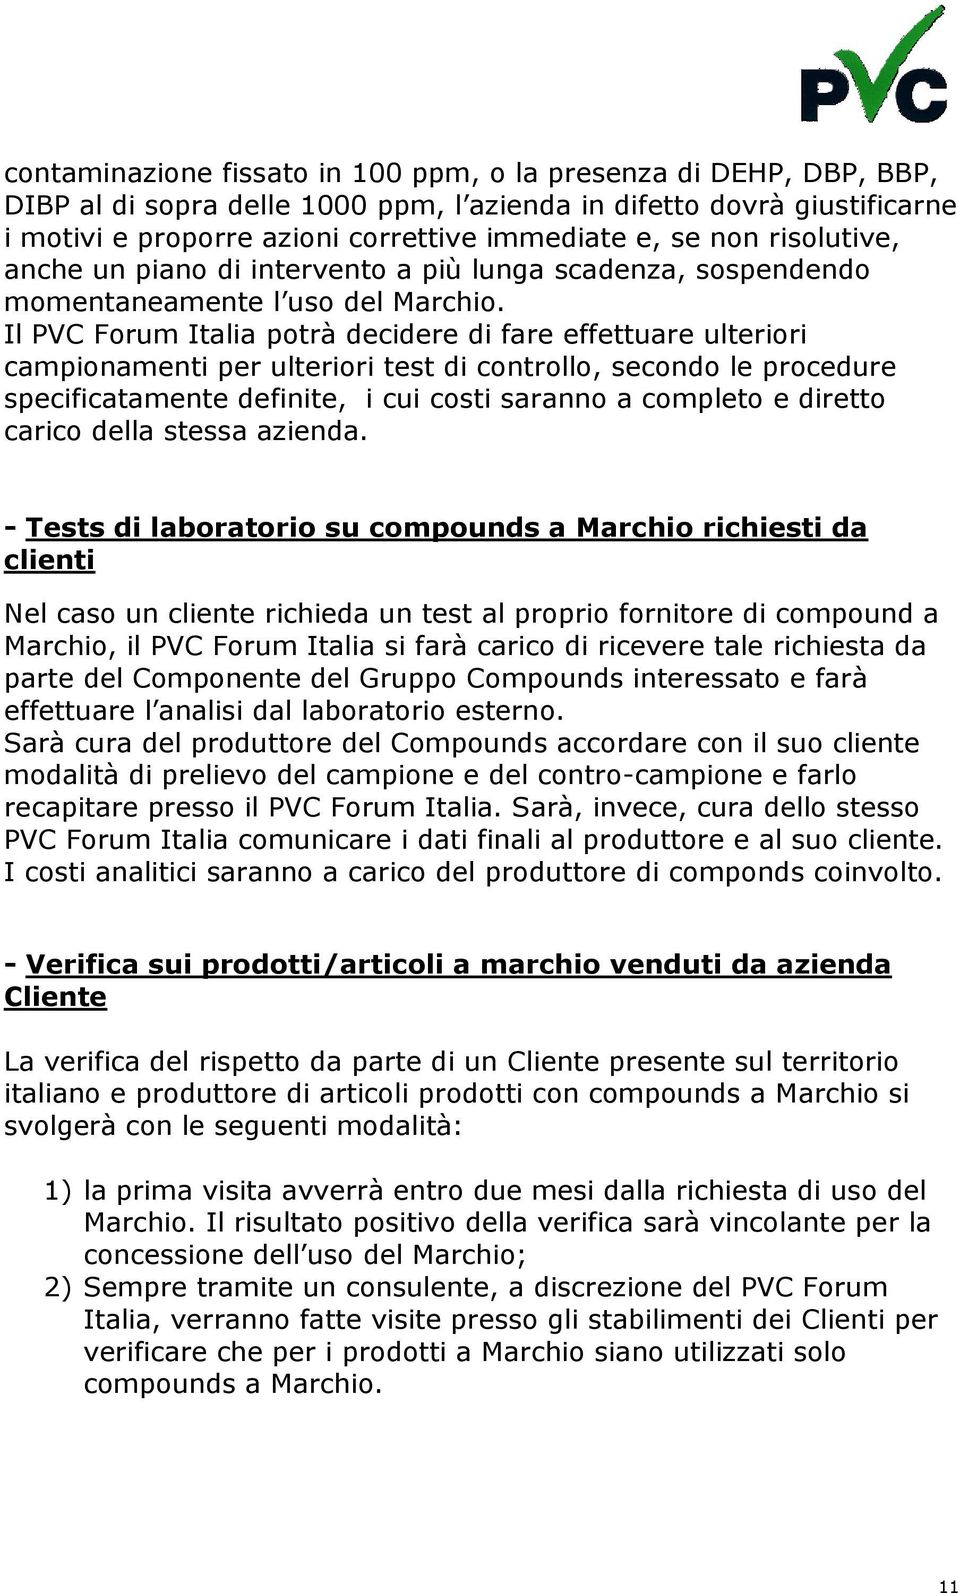 Il PVC Forum Italia potrà decidere di fare effettuare ulteriori campionamenti per ulteriori test di controllo, secondo le procedure specificatamente definite, i cui costi saranno a completo e diretto